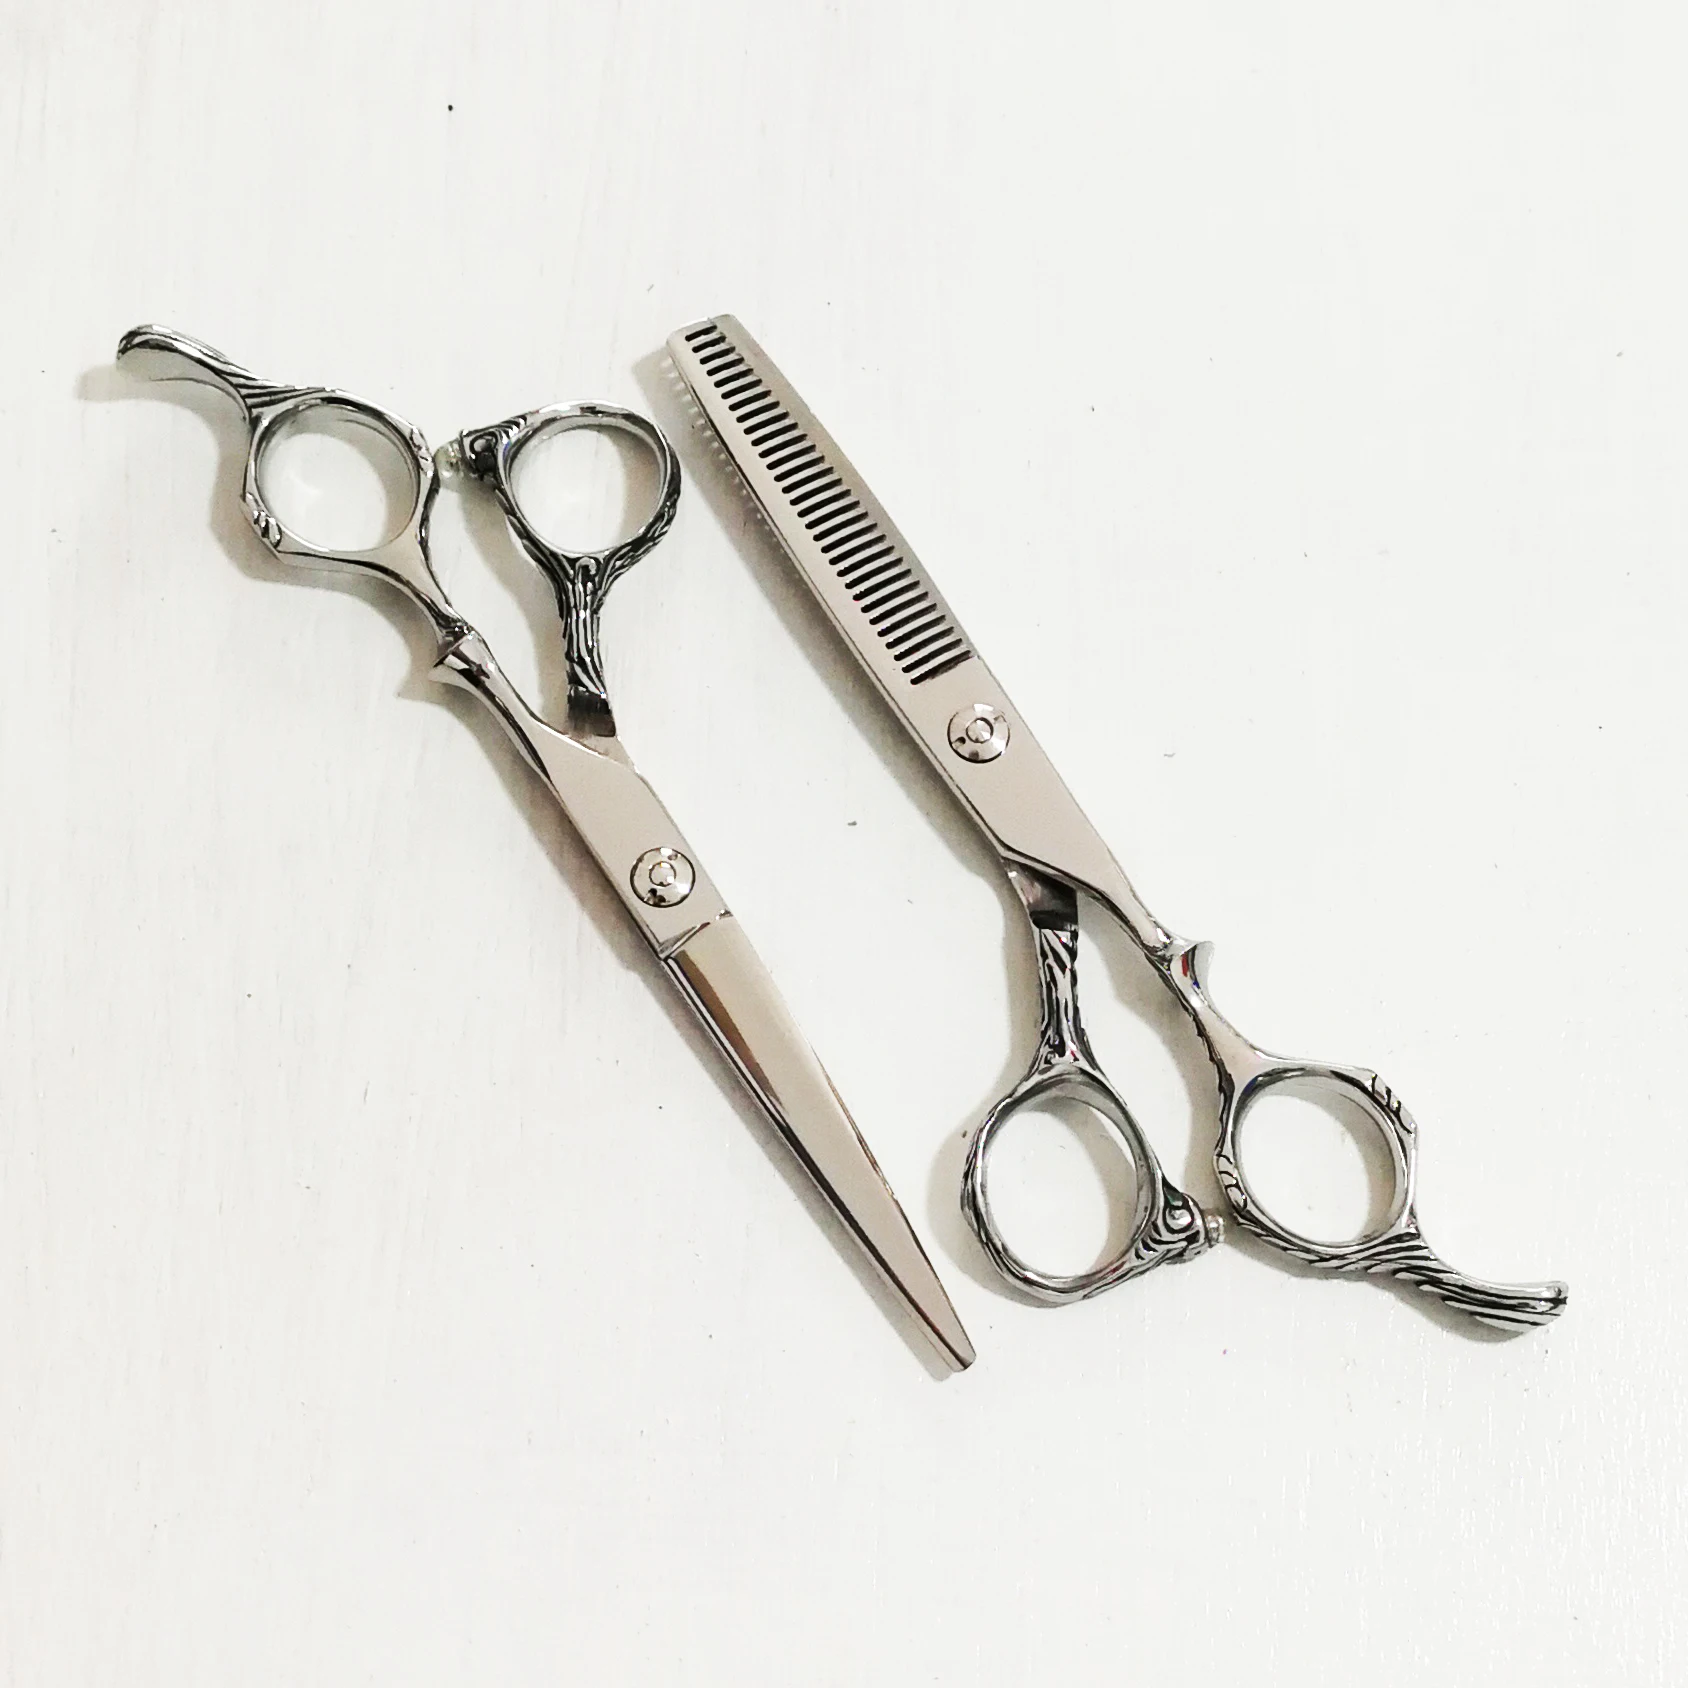 salon hair cutting scissors